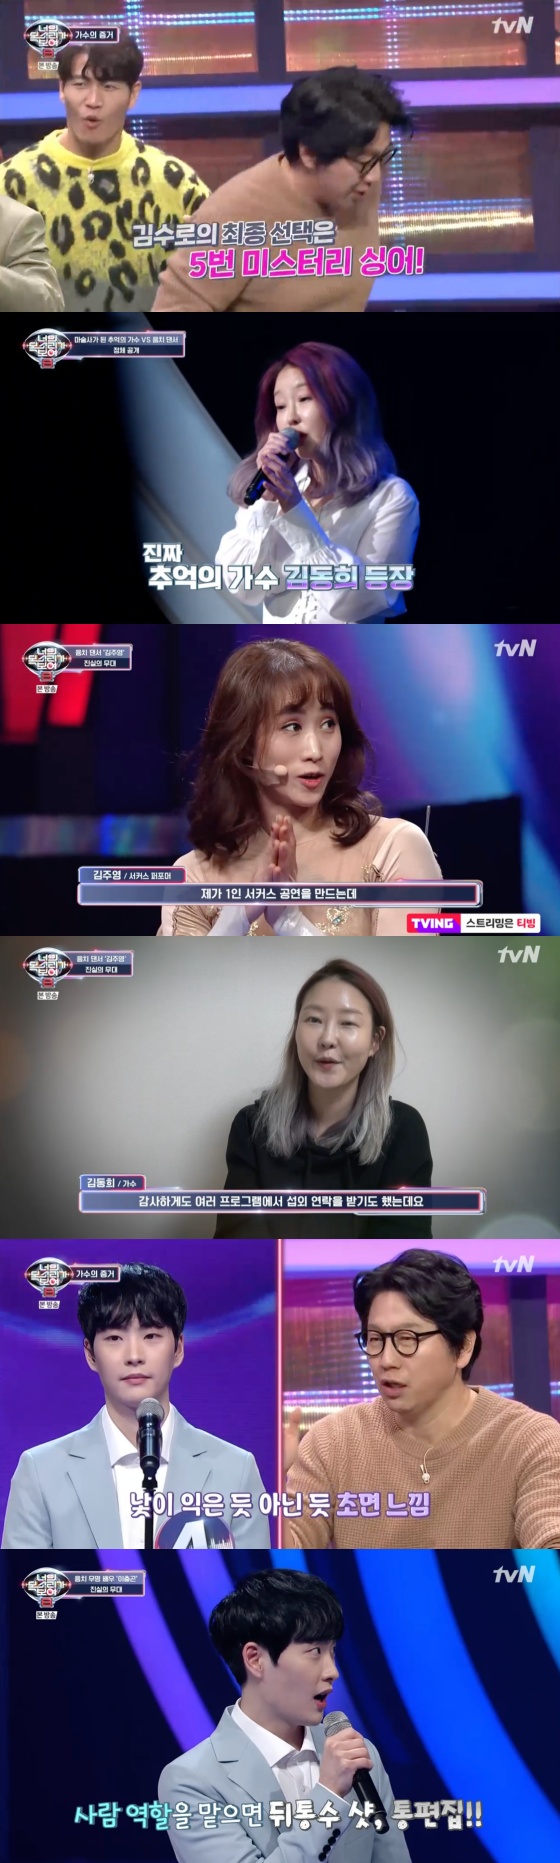 /사진=tvN 음악 예능프로그램 '너의 목소리가 들려 8' 방송화면 캡처